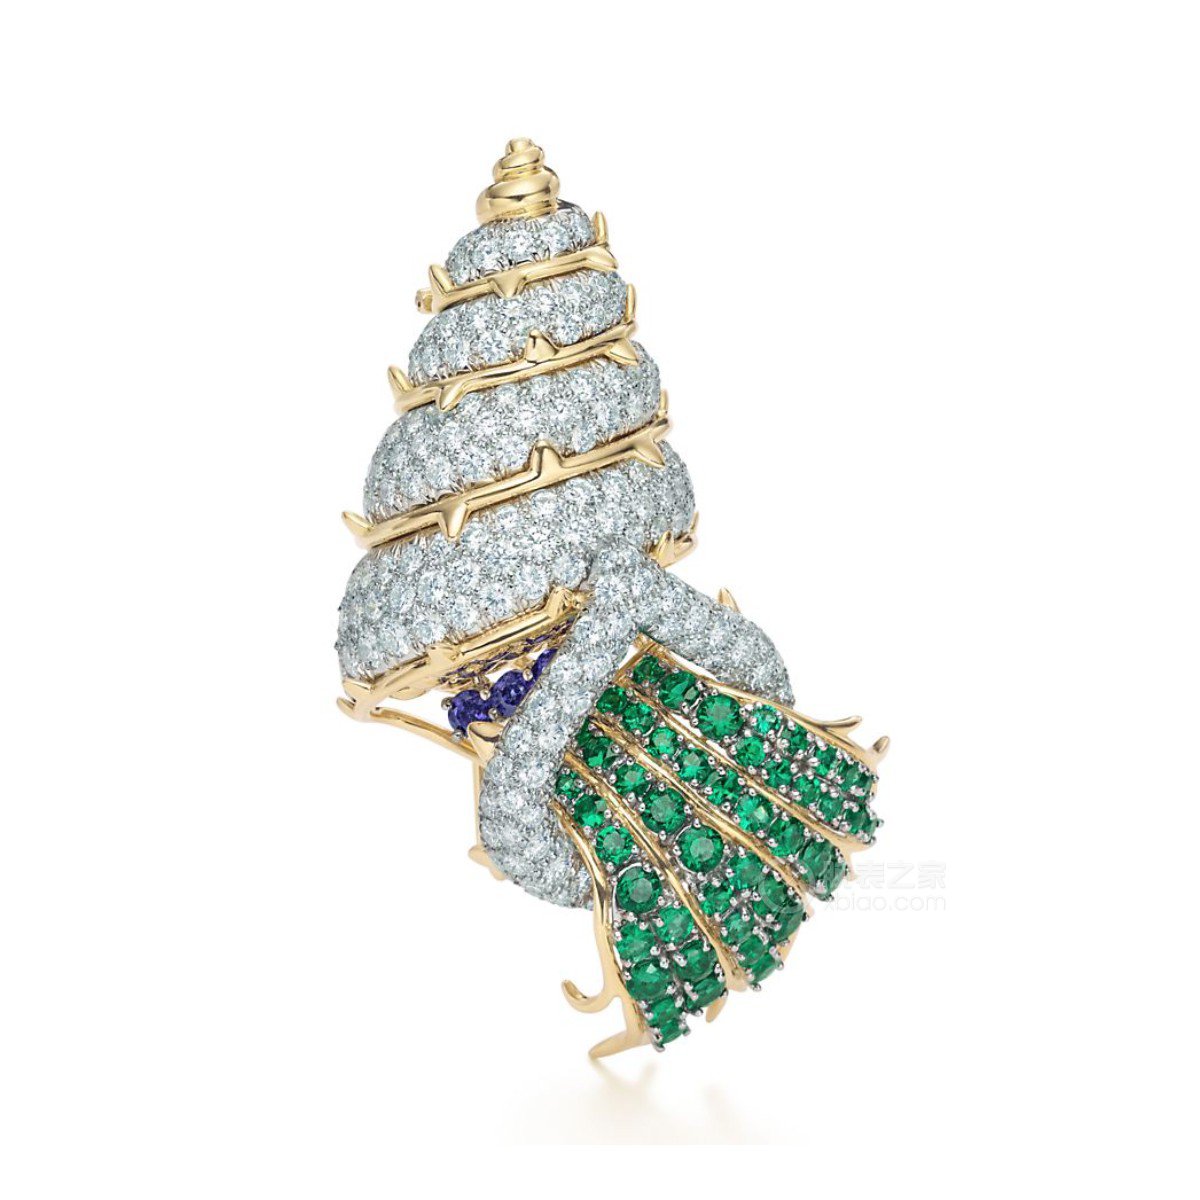 蒂芙尼史隆伯杰系列铂金及18K黄金镶嵌祖母绿, 蓝宝石及钻石胸针胸针